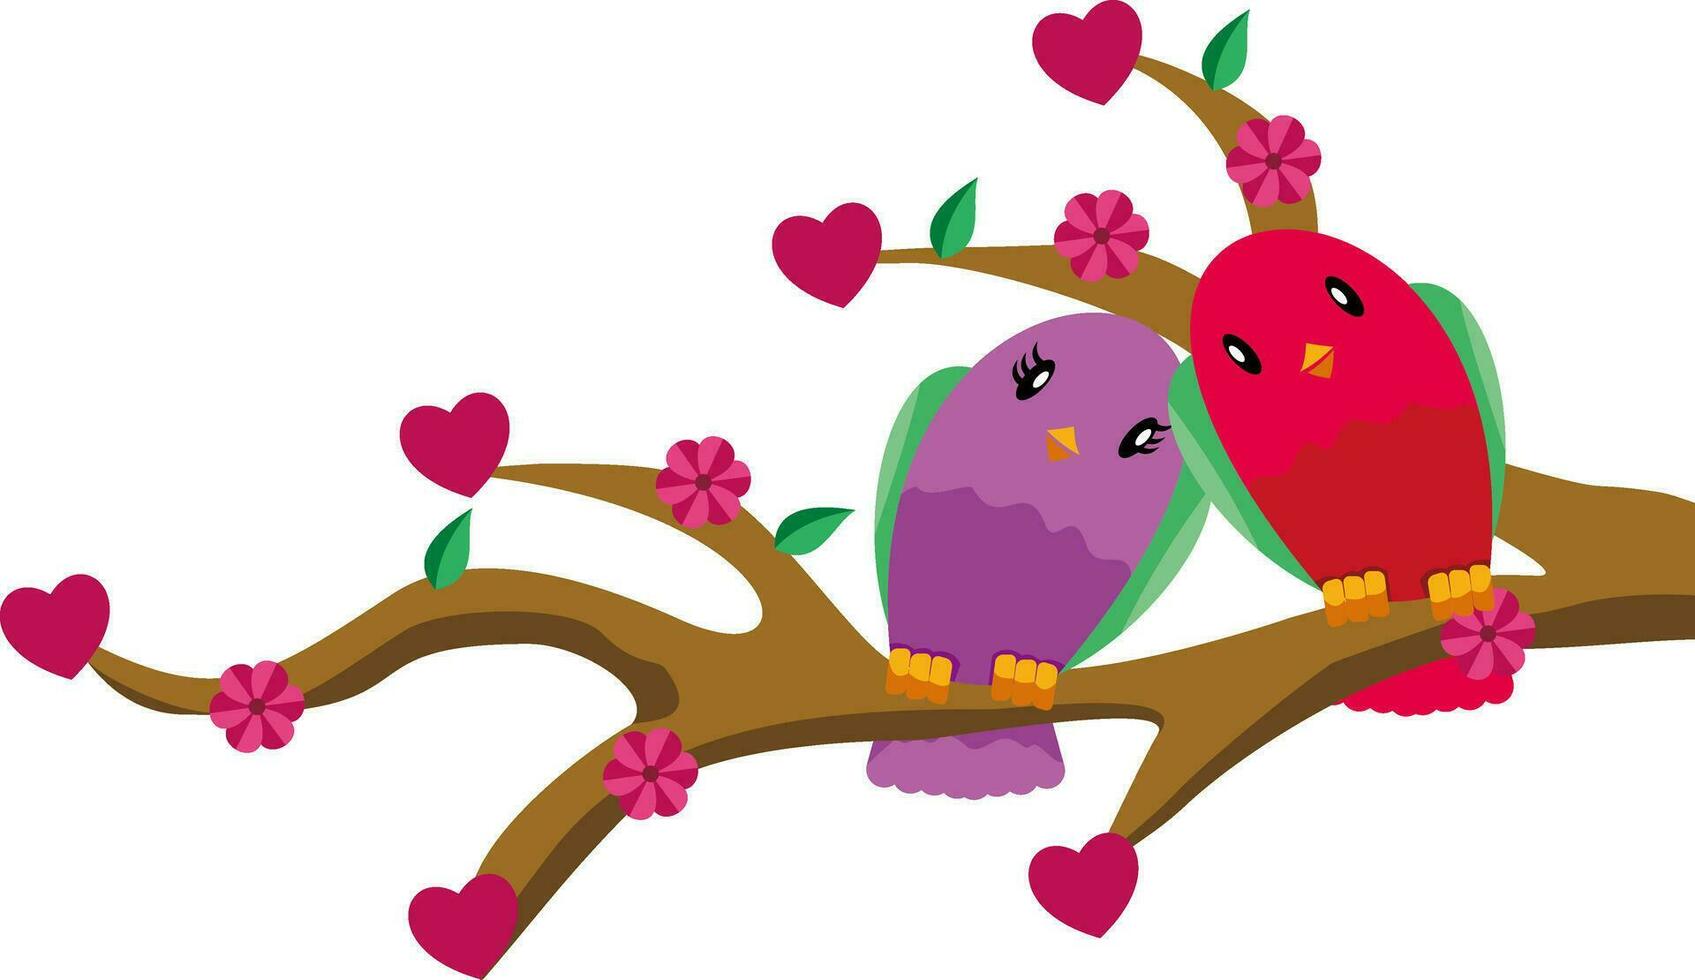 Valentinsgrüße Tag Hintergrund Design mit Herz Aufkleber verstreut vektor